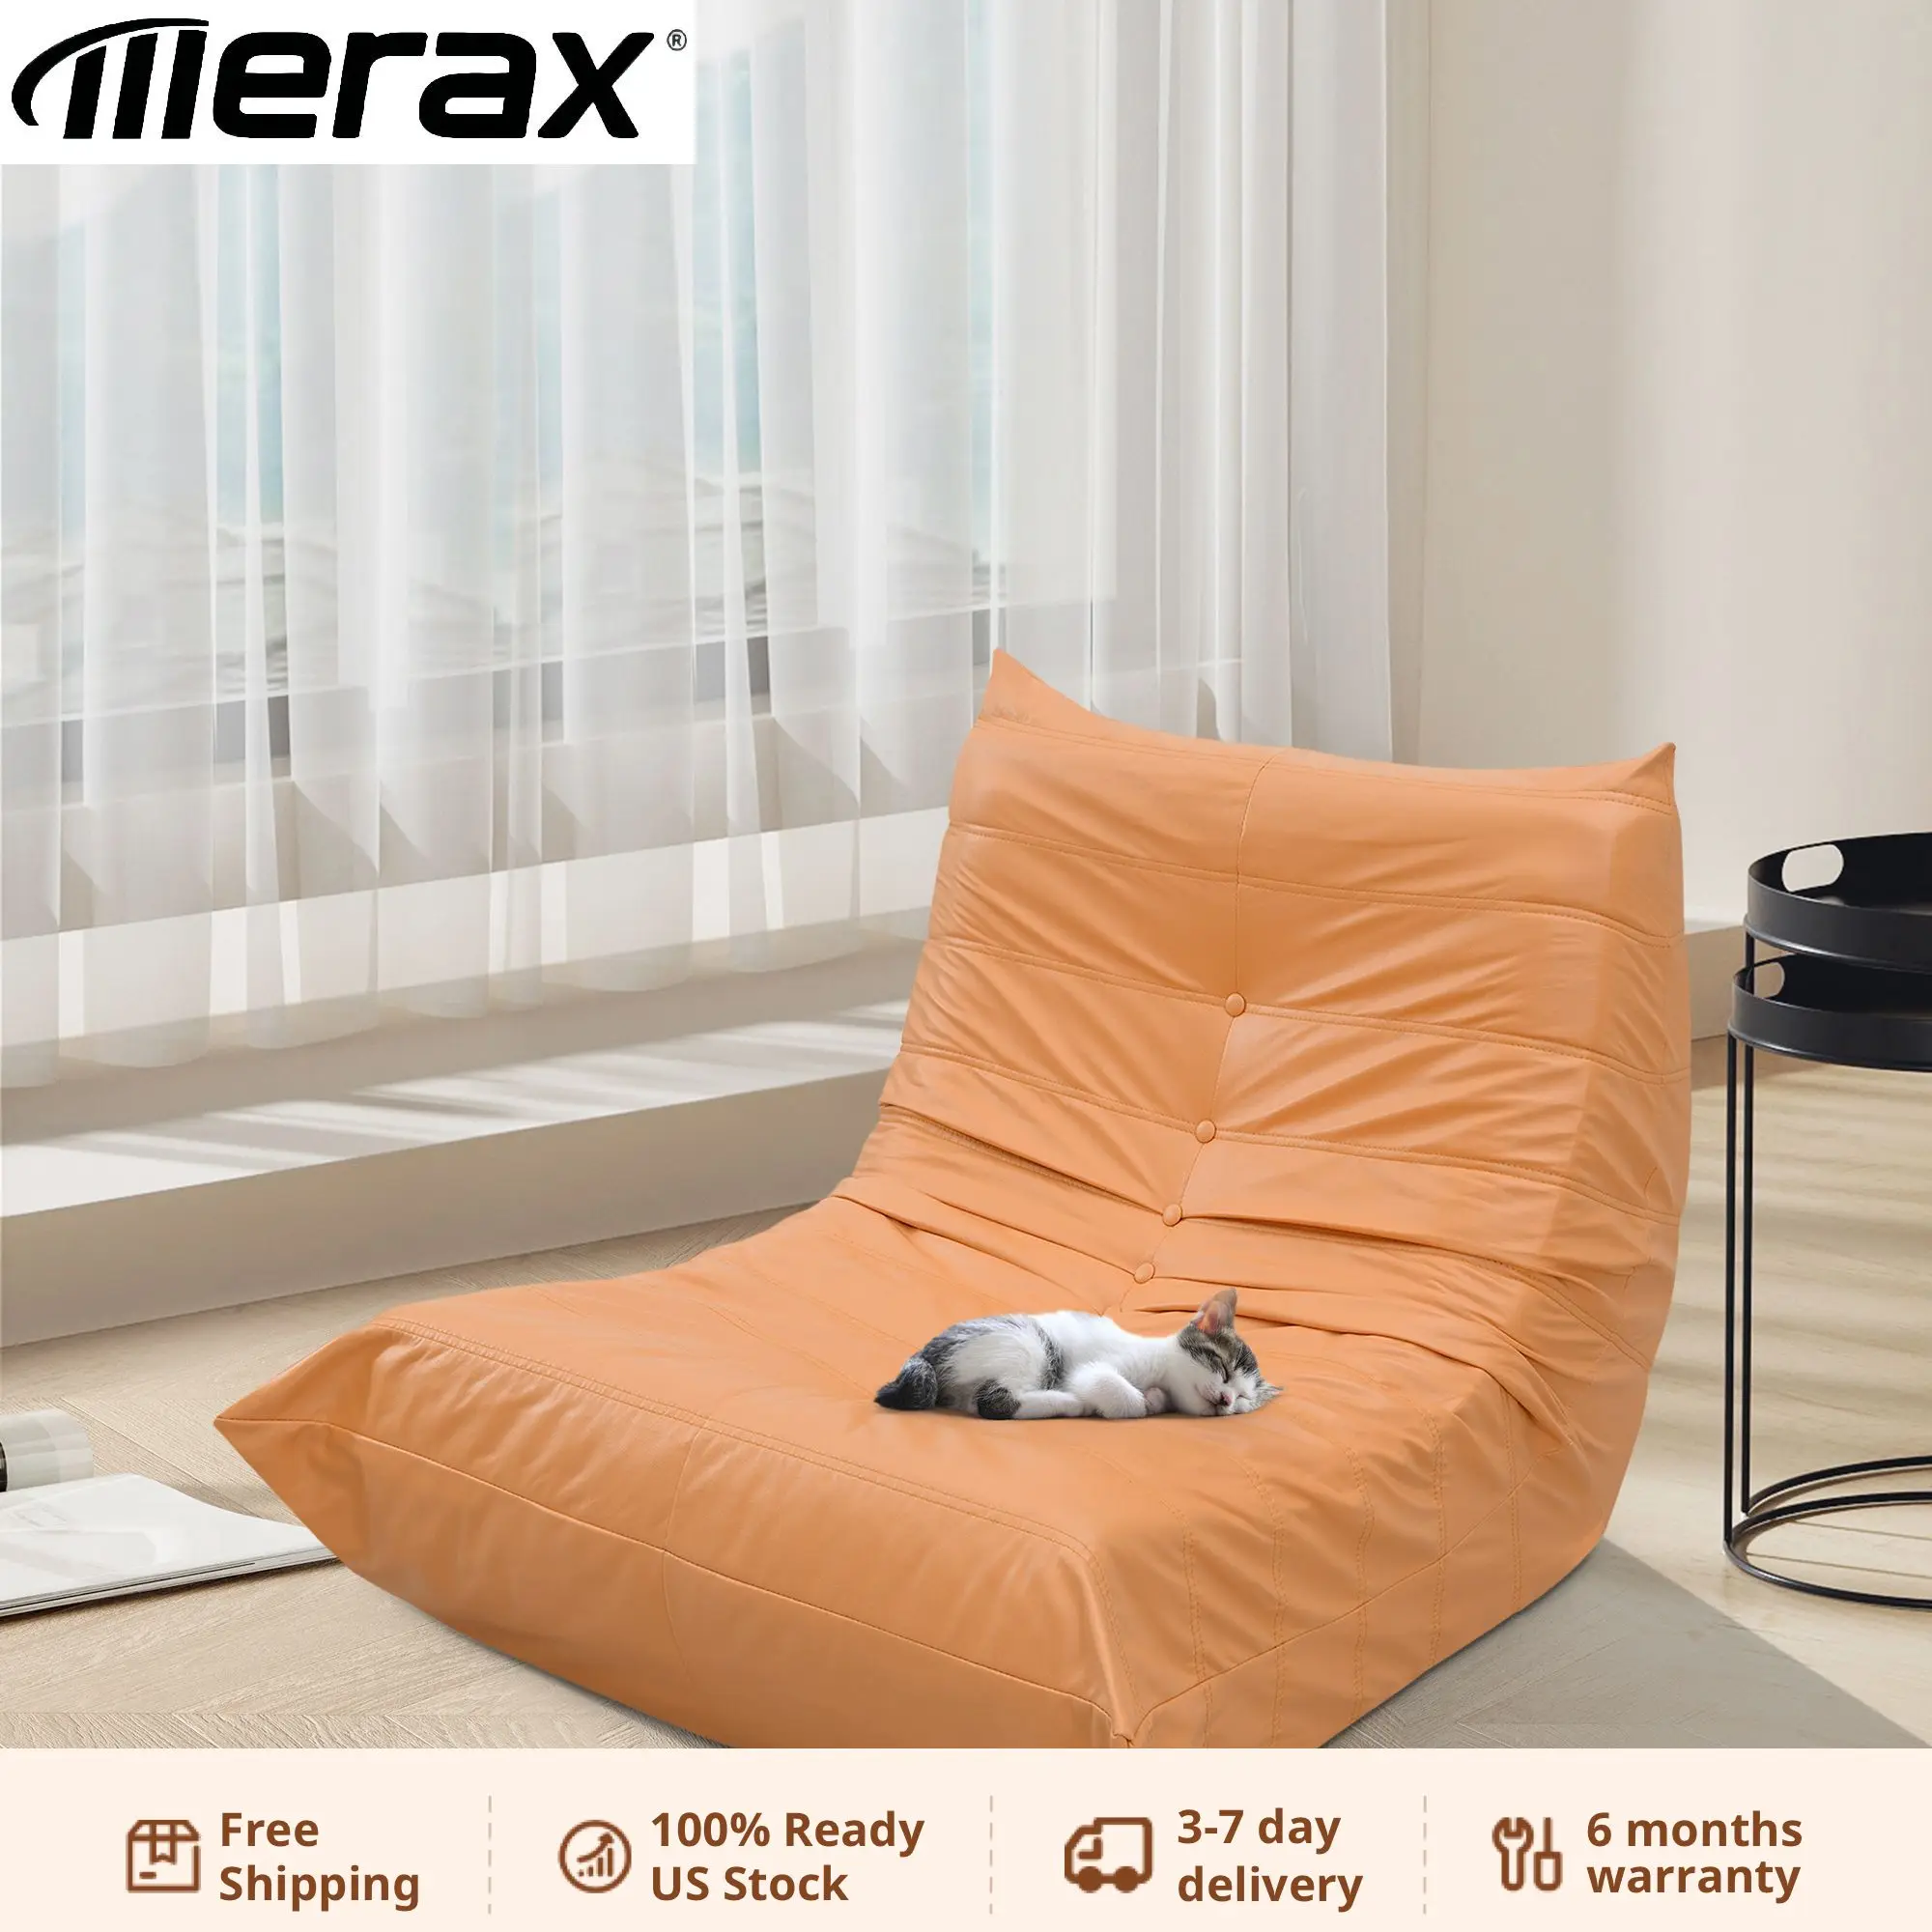 Удобный раскладной диван большого размера, современное одноместное кресло без подлокотников со спинкой в стиле ретро, диван со 100% наполнителем из губки